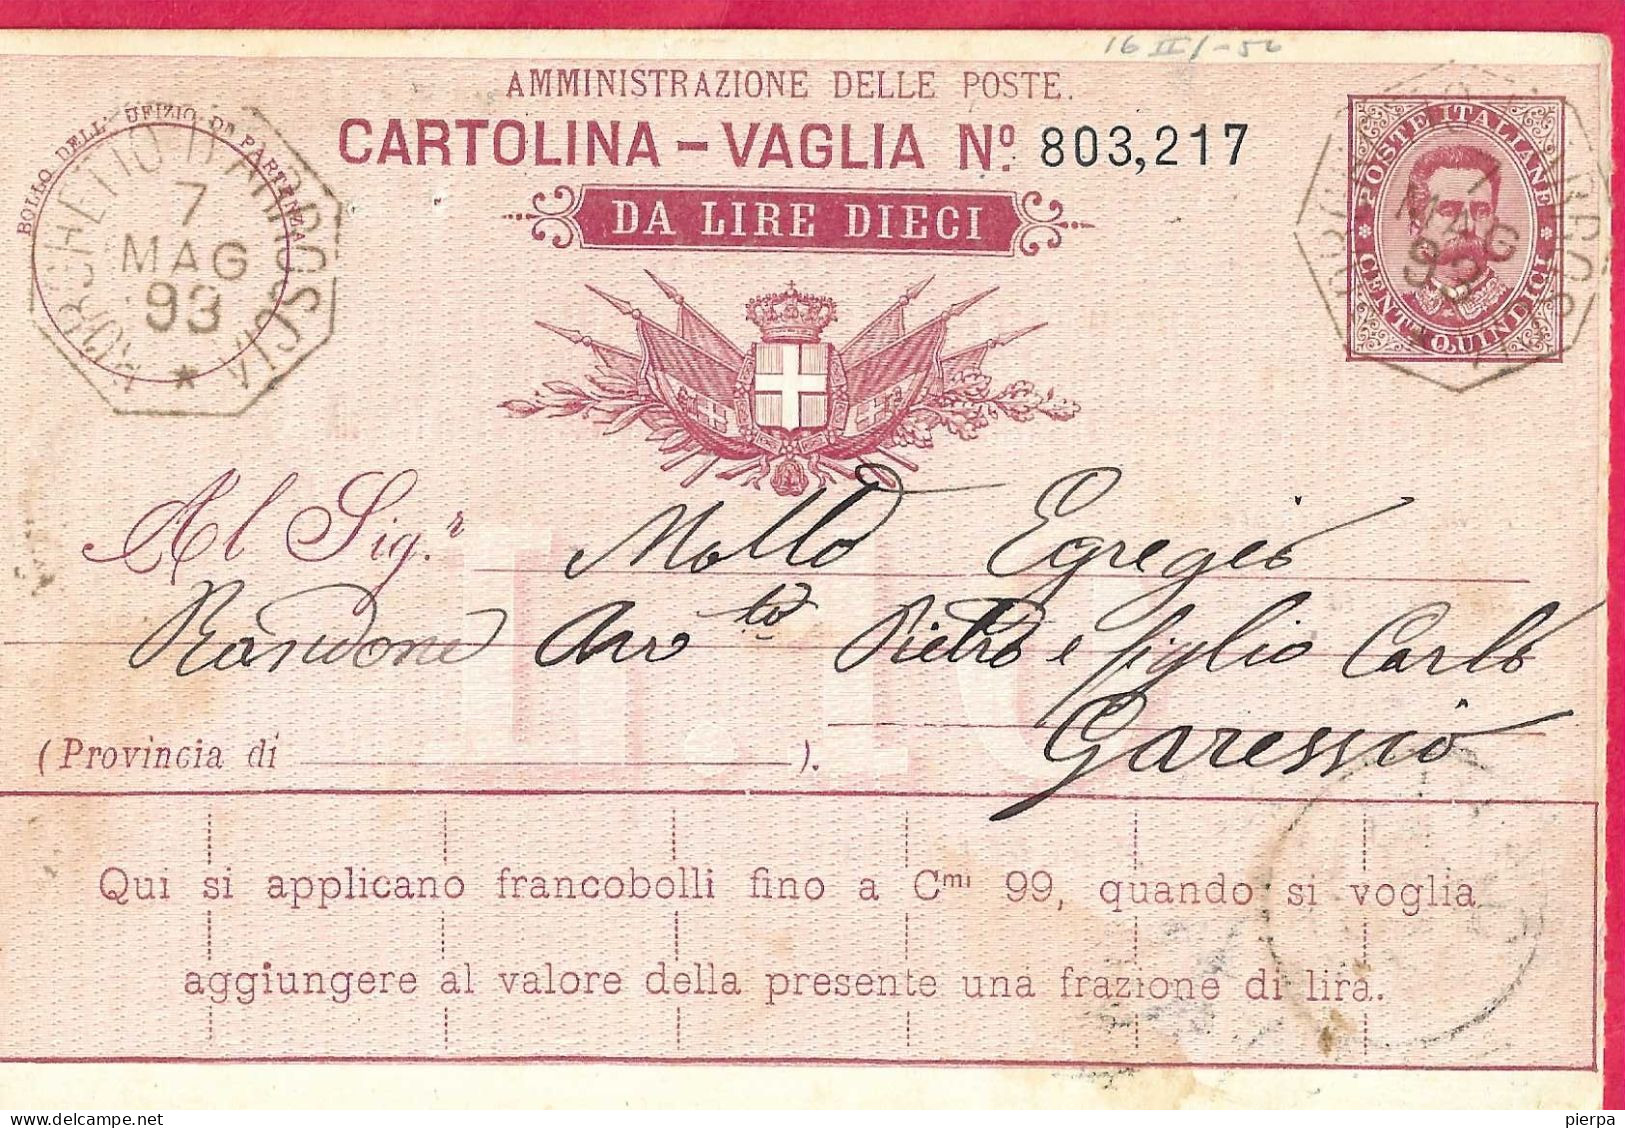 INTERO CARTOLINA-VAGLIA UMBERTO C.15 DA LIRE 10 (CAT. INT.7Ba) -ANNULLO TONDO RIQUADRATO"BORGHETTO D'ARROSCIA*3.MAG.93* - Stamped Stationery